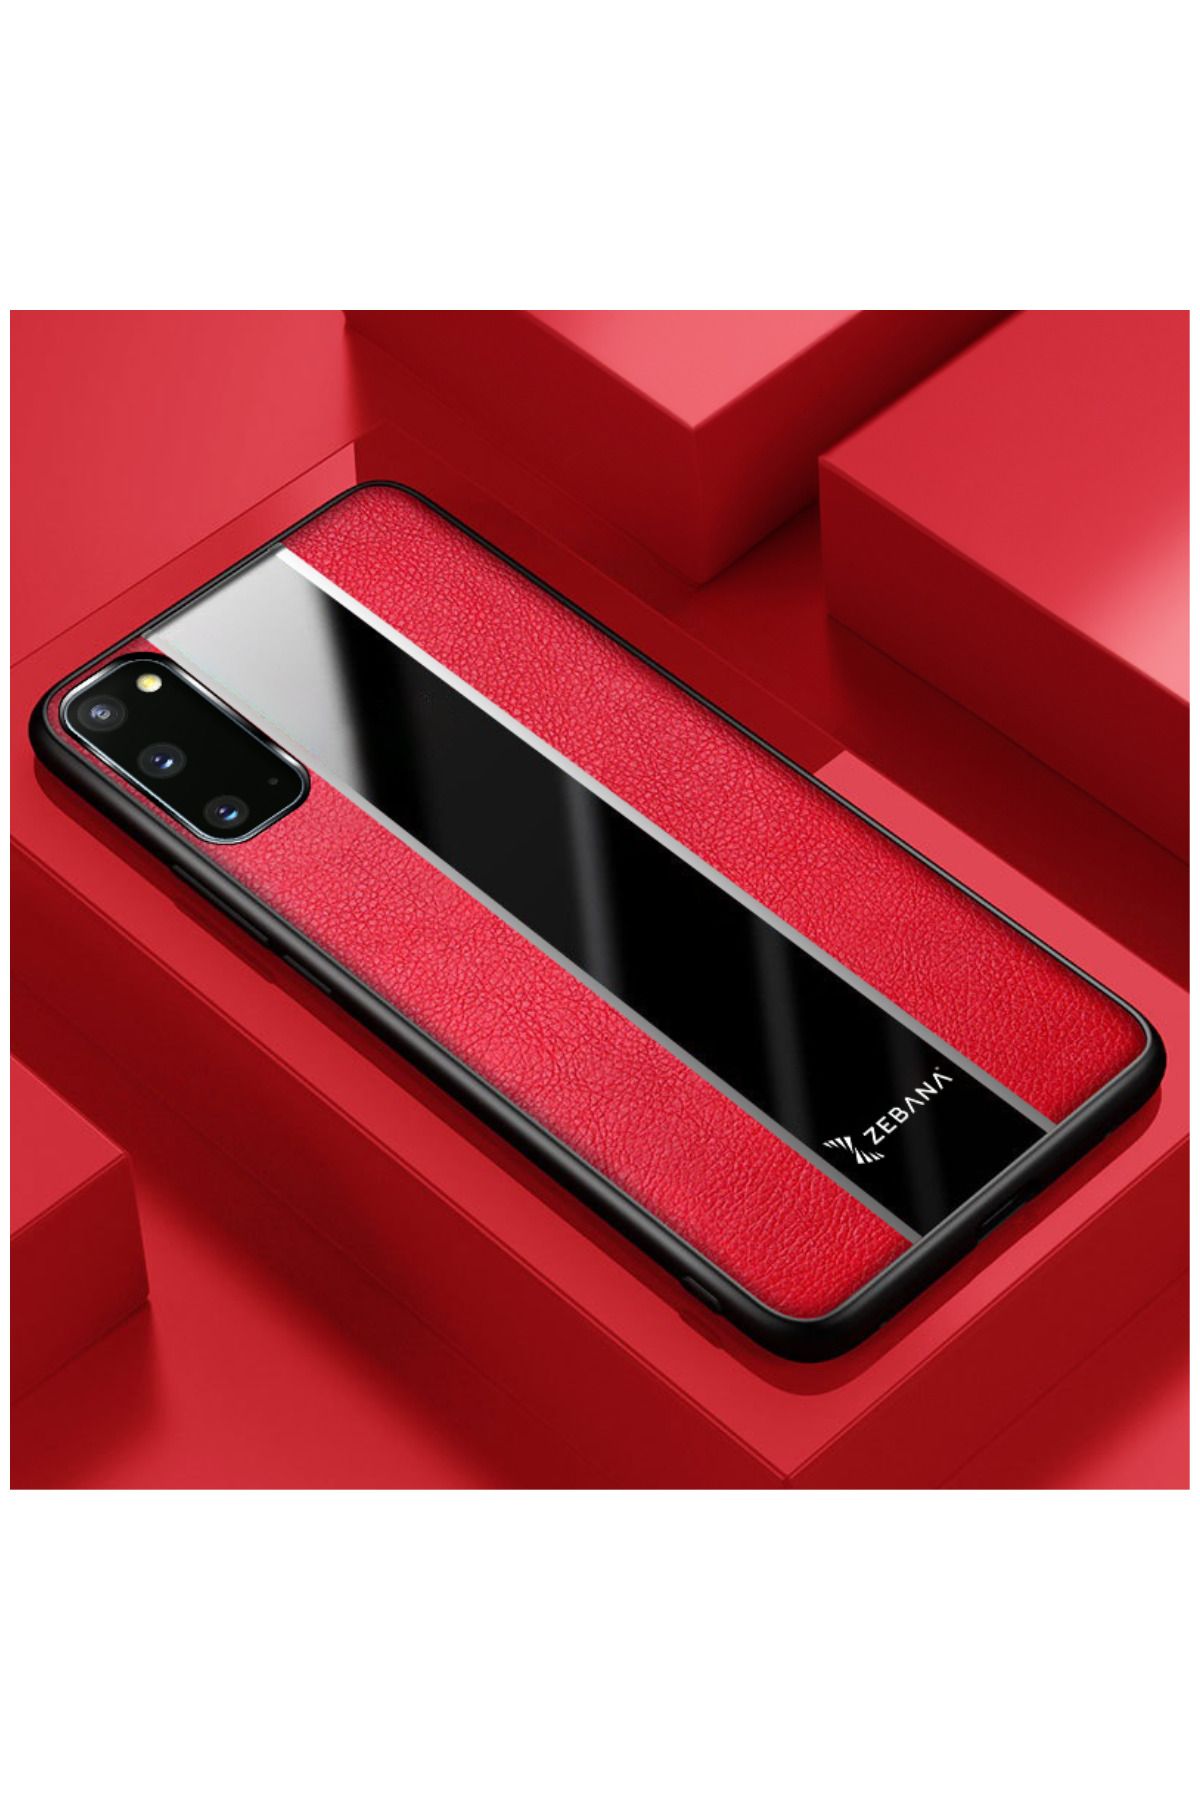 Zebana Samsung Galaxy S20 Fe Uyumlu Kılıf Premium Deri Kılıf Kırmızı